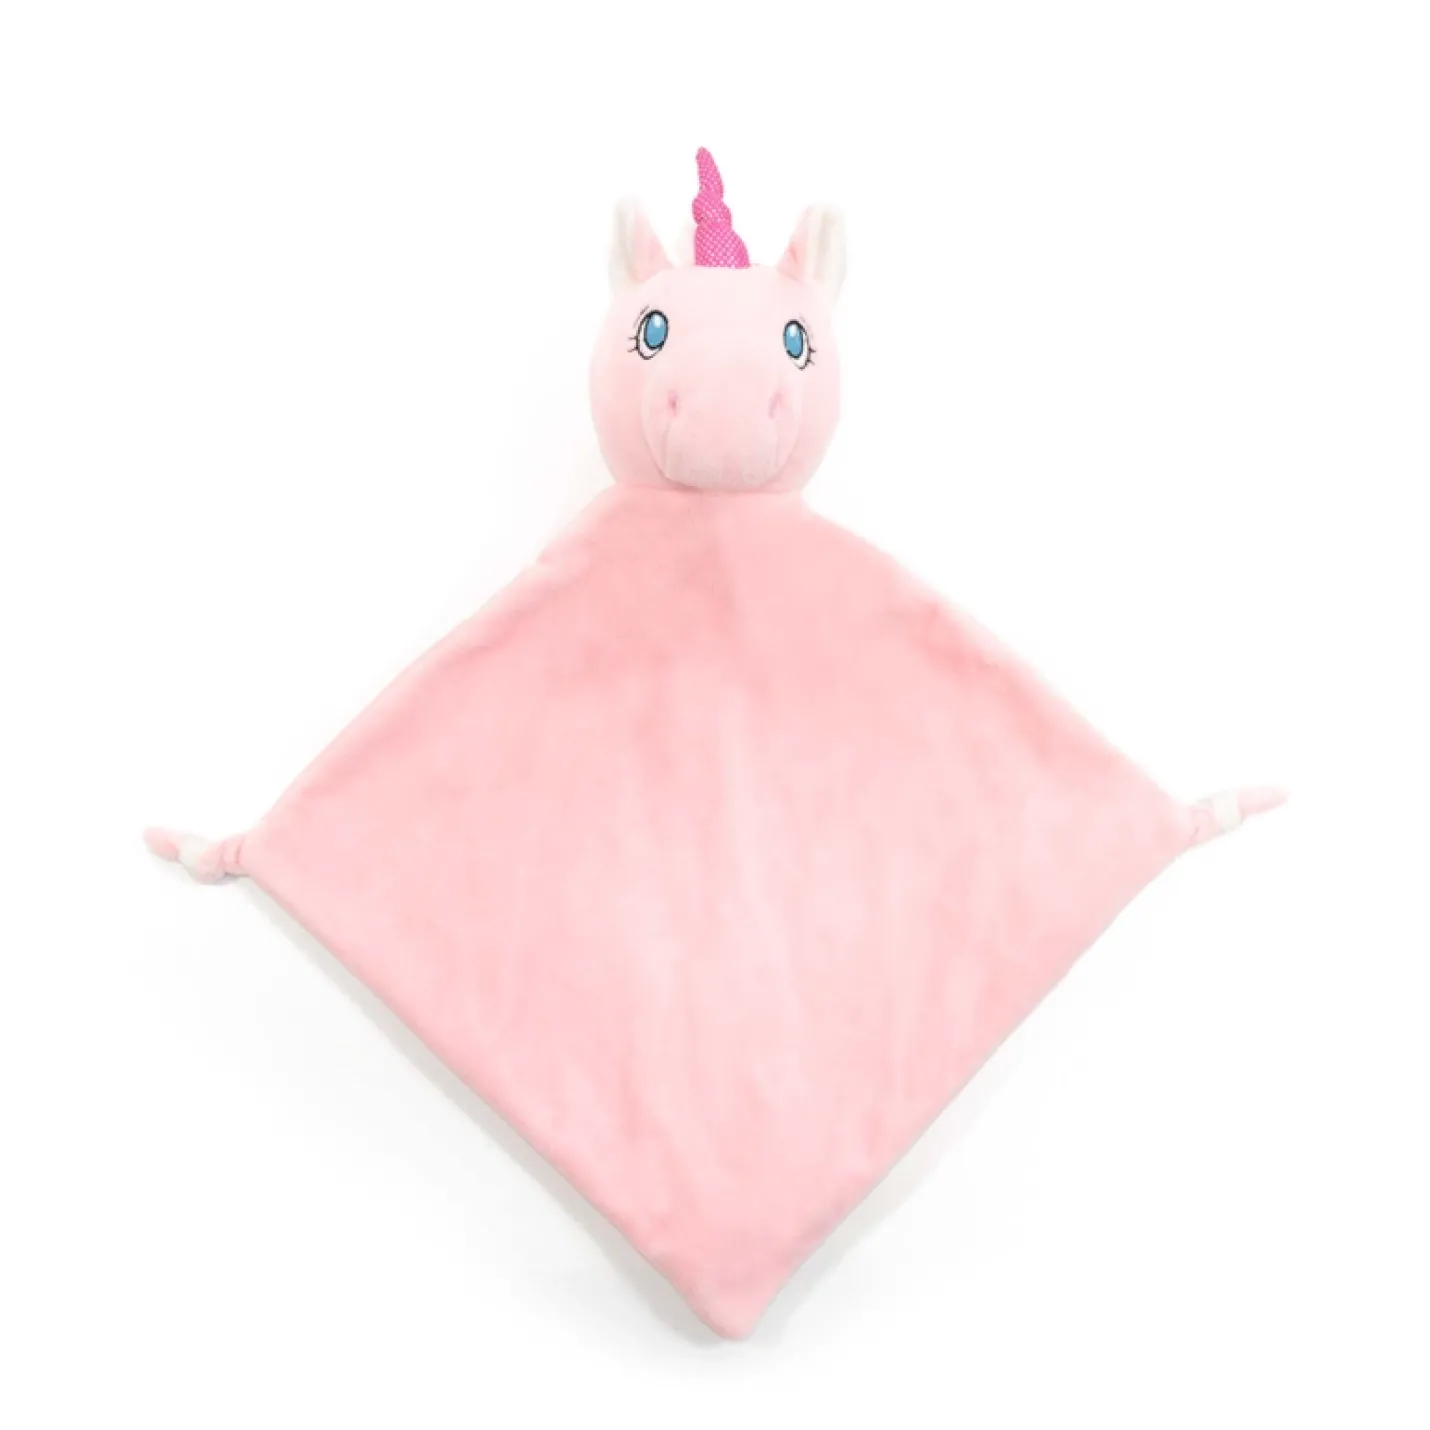 Knuffeldierdoekje Eenhoorn is een roze doekje met knopen aan het uiteinde van de punten en een eenhoorn hoofdje erop met een glimmende roze hoorn en blauwe ogen